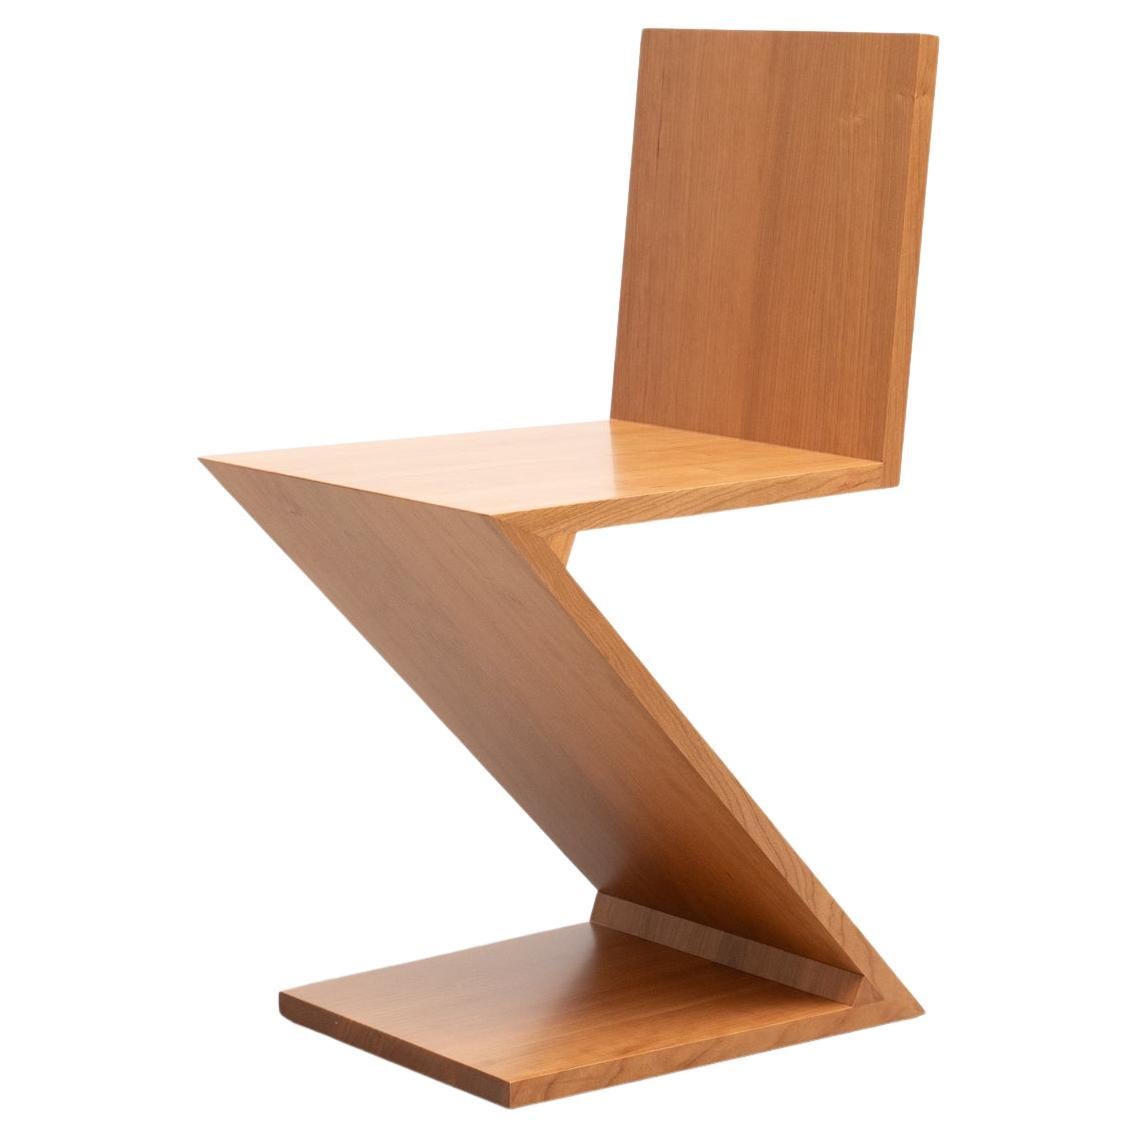 Stuhl, entworfen von Gerrit Thomas Rietveld im Jahr 1934. 

Hergestellt von Cassina in Italien, neu aufgelegt 1973/2011.

Dieser von Gerrit Rietveld entworfene Stuhl ist ein frühes Beispiel für eine freitragende Sitzfläche und besteht aus vier